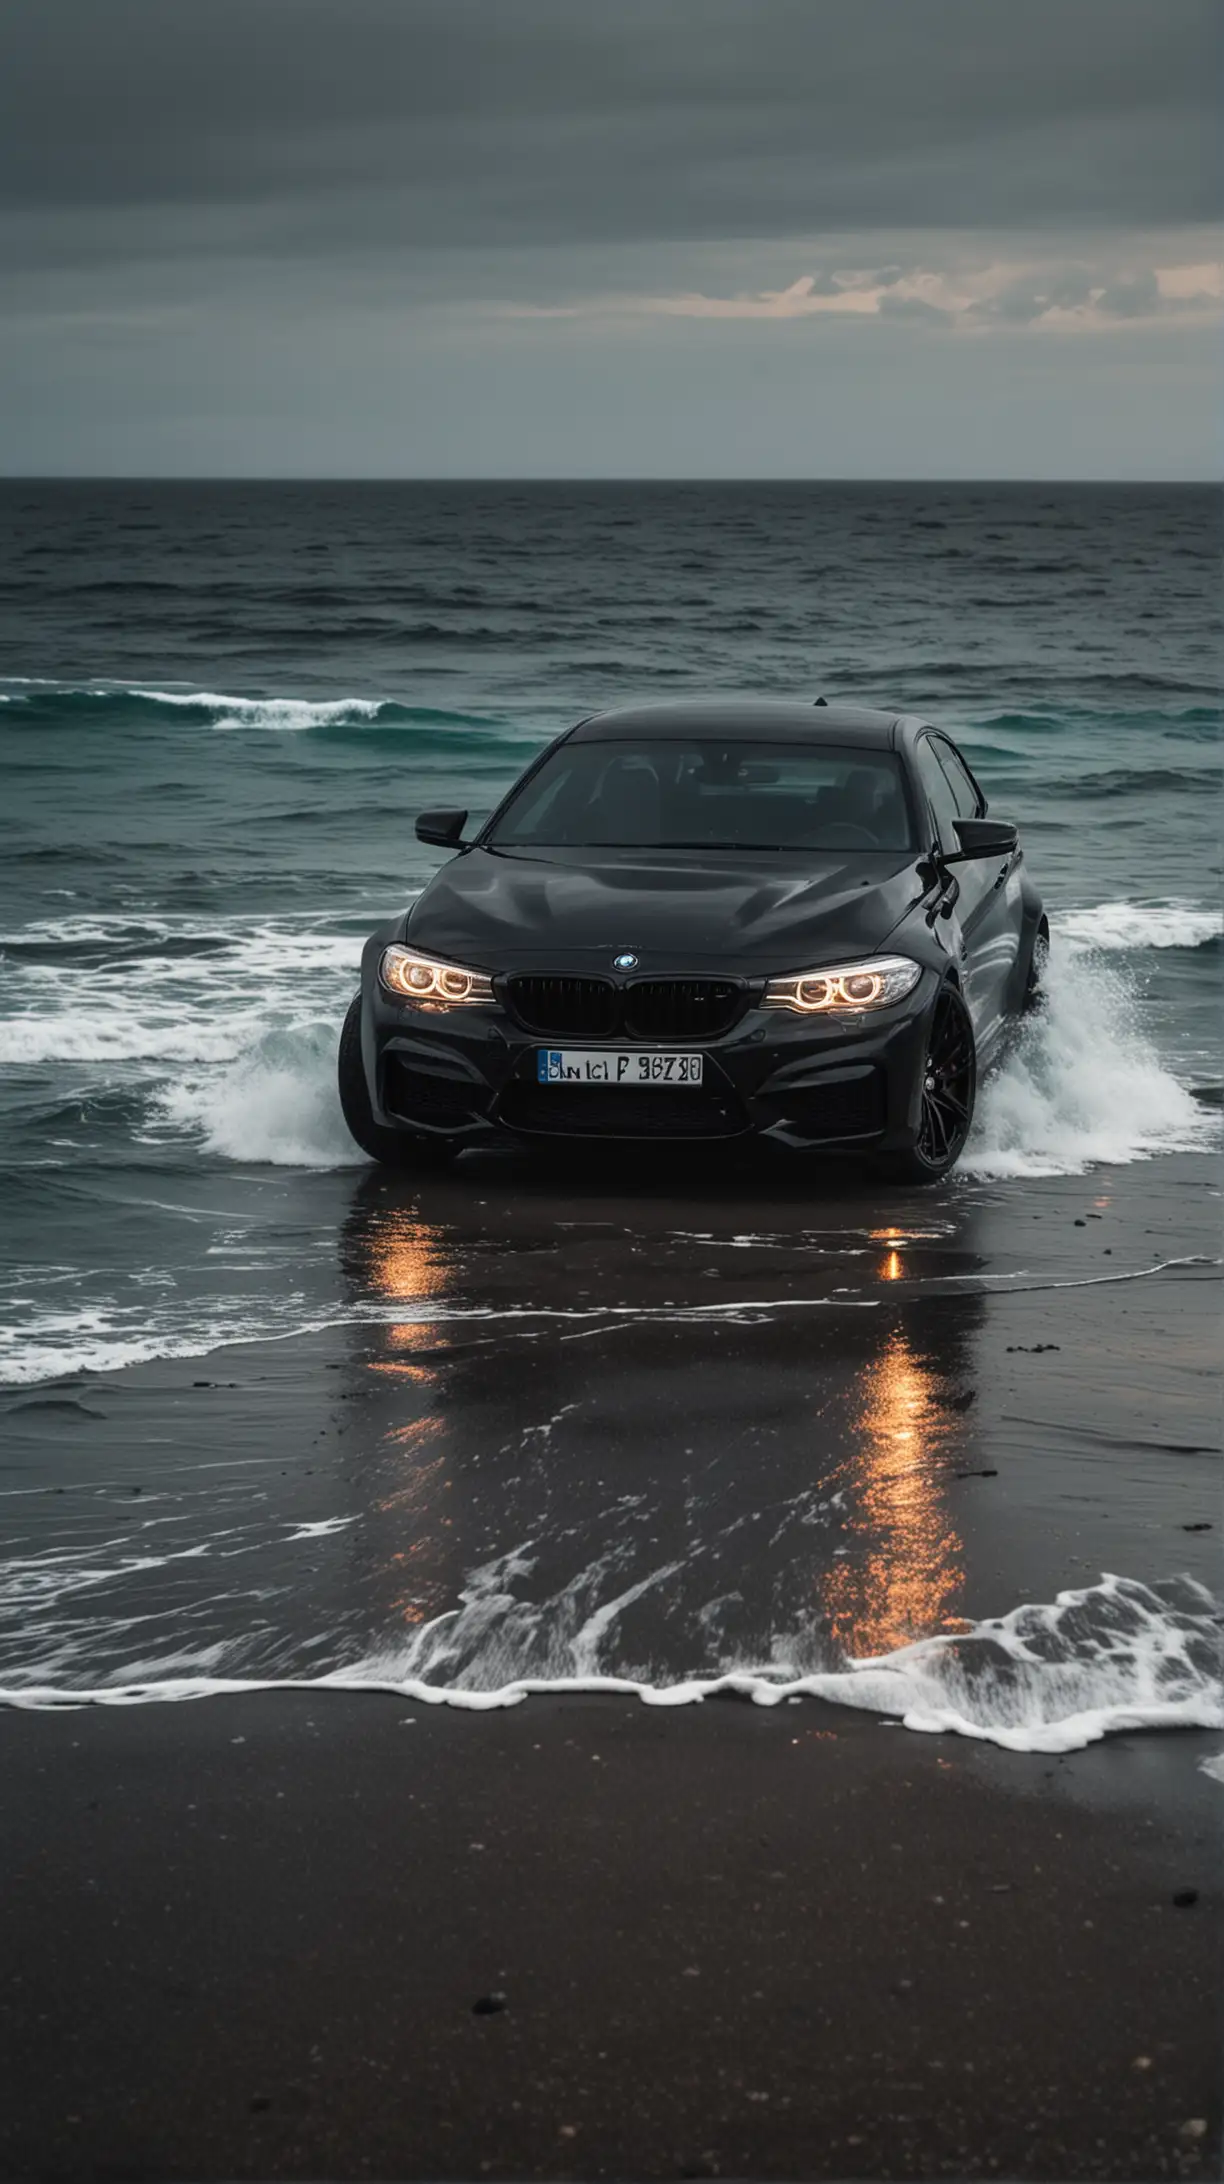 Автомобиль БМВ чёрного цвета с включенными фарами на фоне океана